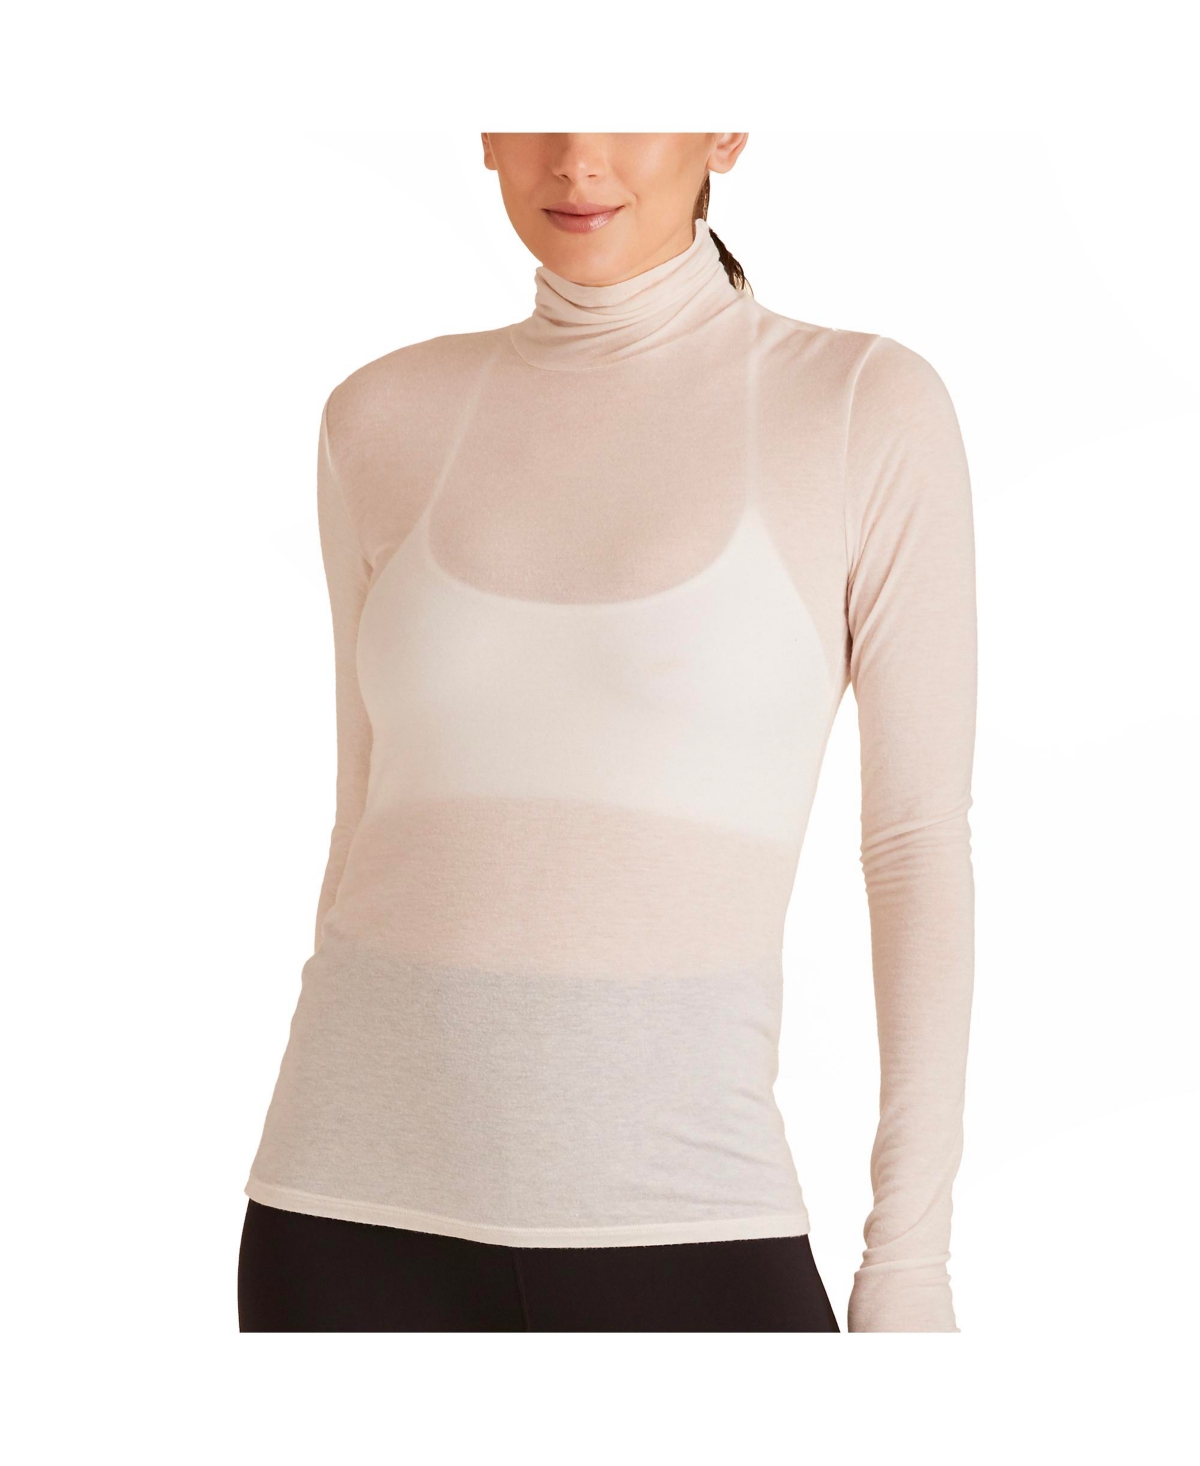 Regular Size Adult Women Washable Cashmere Turtleneck Long Sleeve T-Shirt - Bone